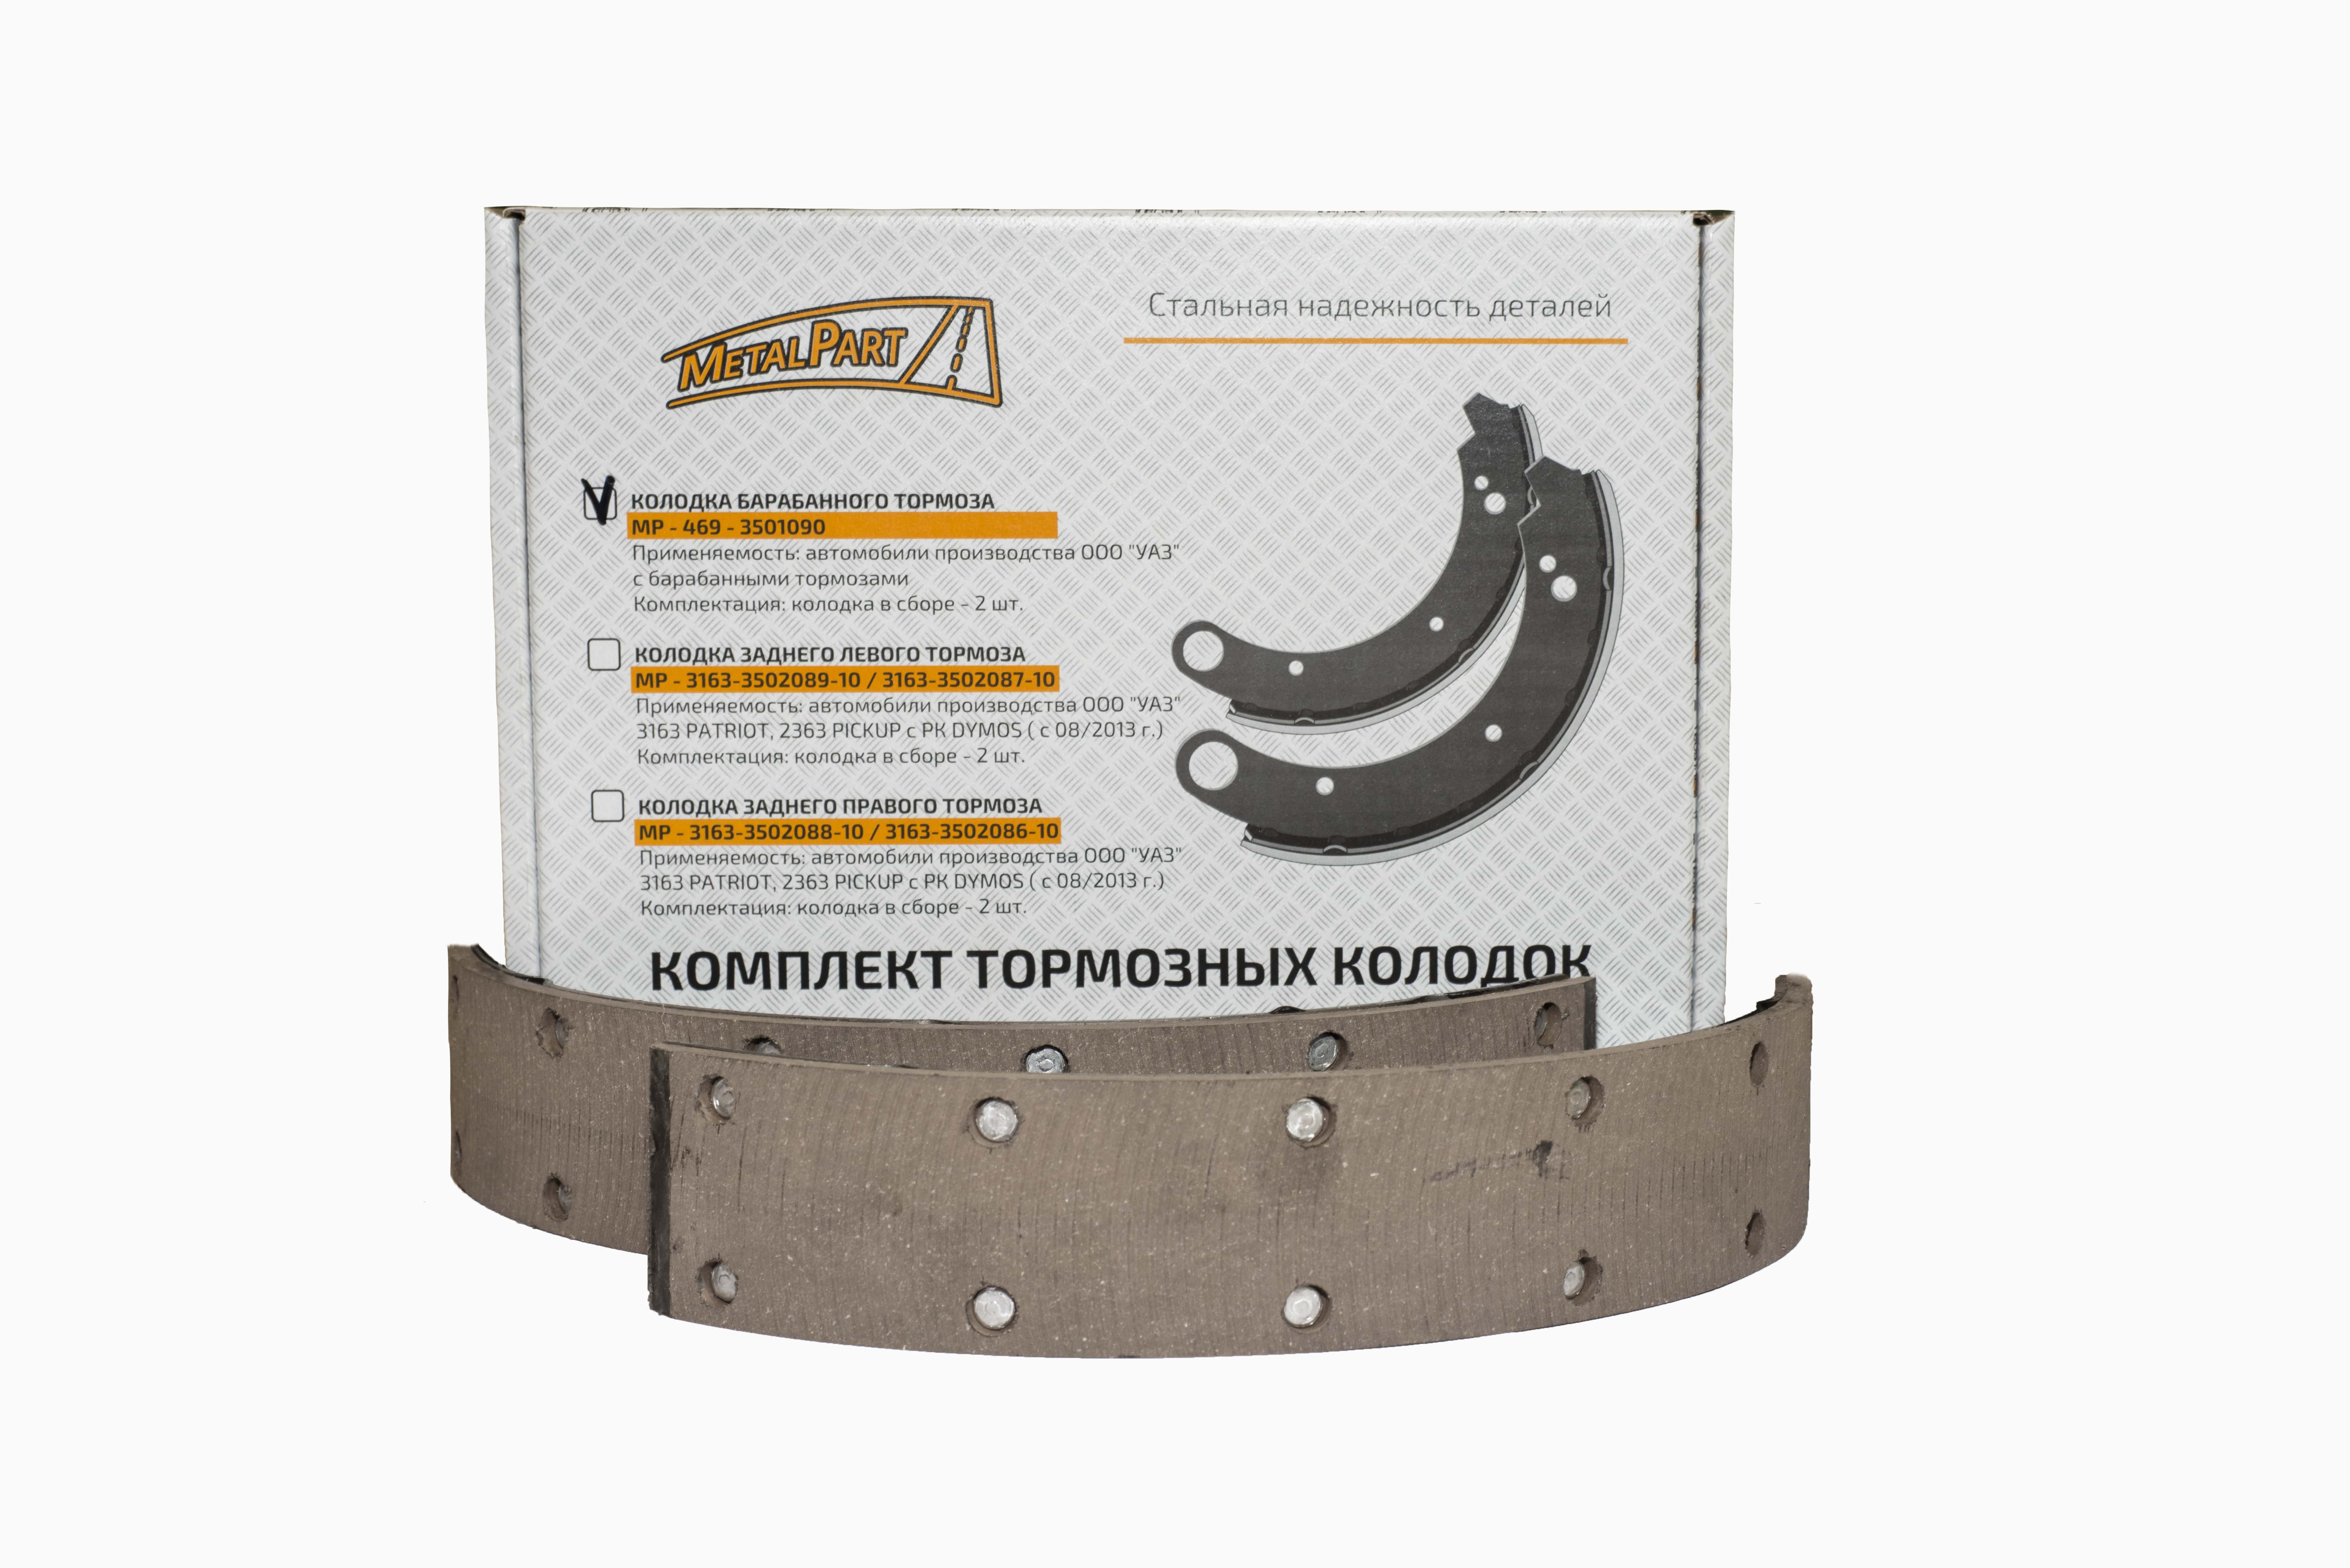 Колодка барабанного тормоза для автомобилей производства ООО "УАЗ" с барабанными тормозами